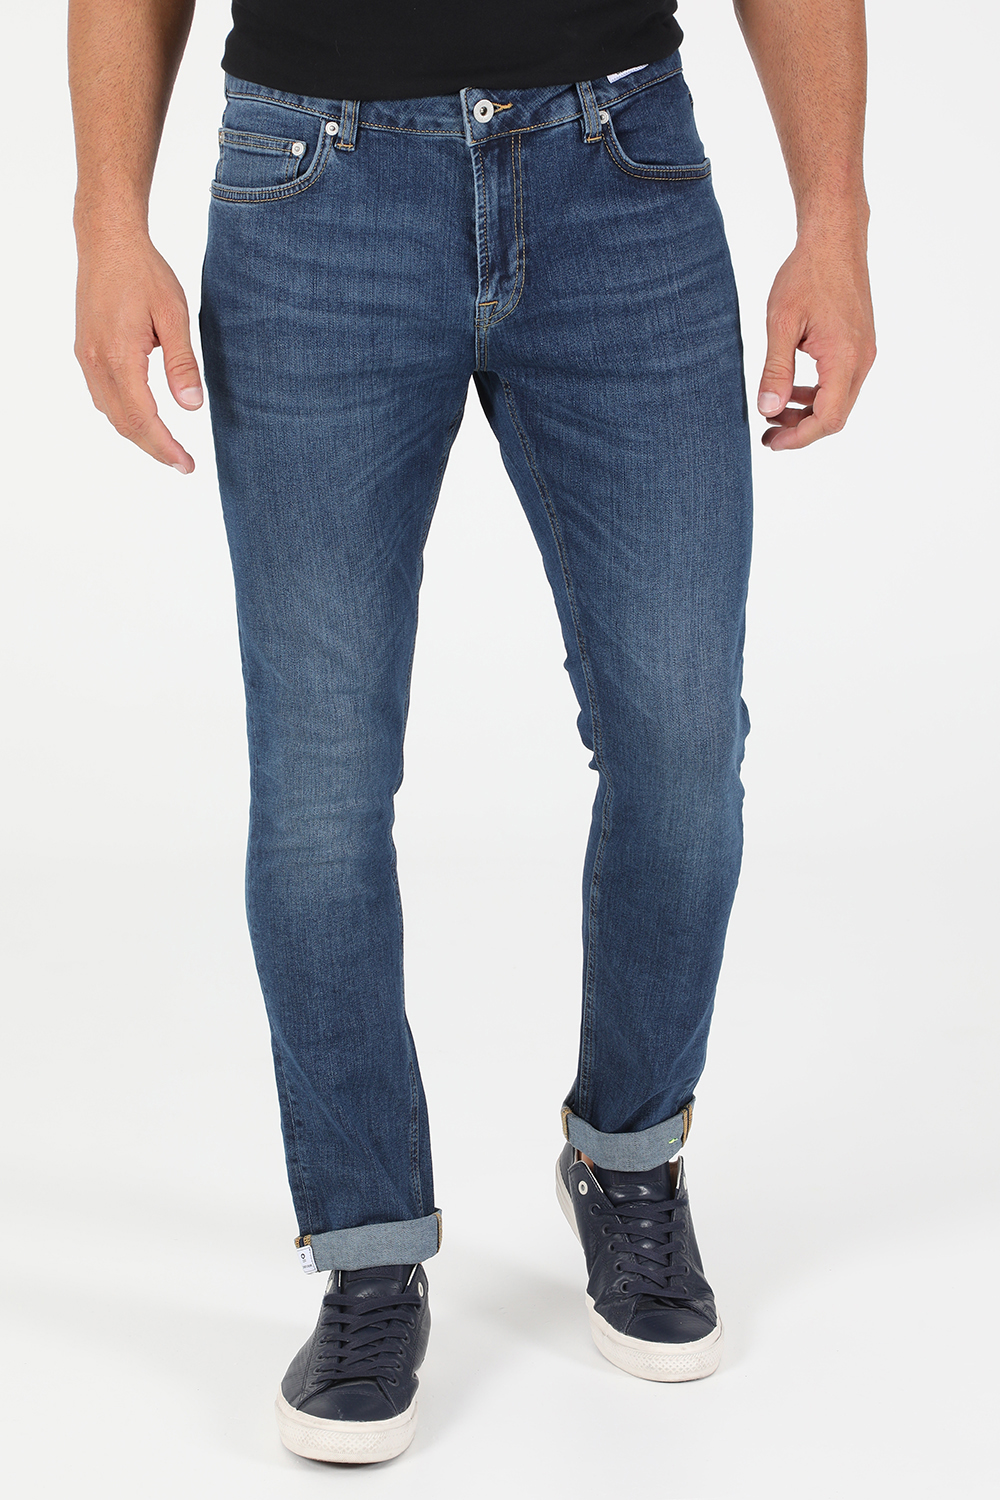 Ανδρικά/Ρούχα/Τζίν/Straight UNIFORM - Ανδρικό jean παντελόνι UNIFORM IBANEZ μπλε